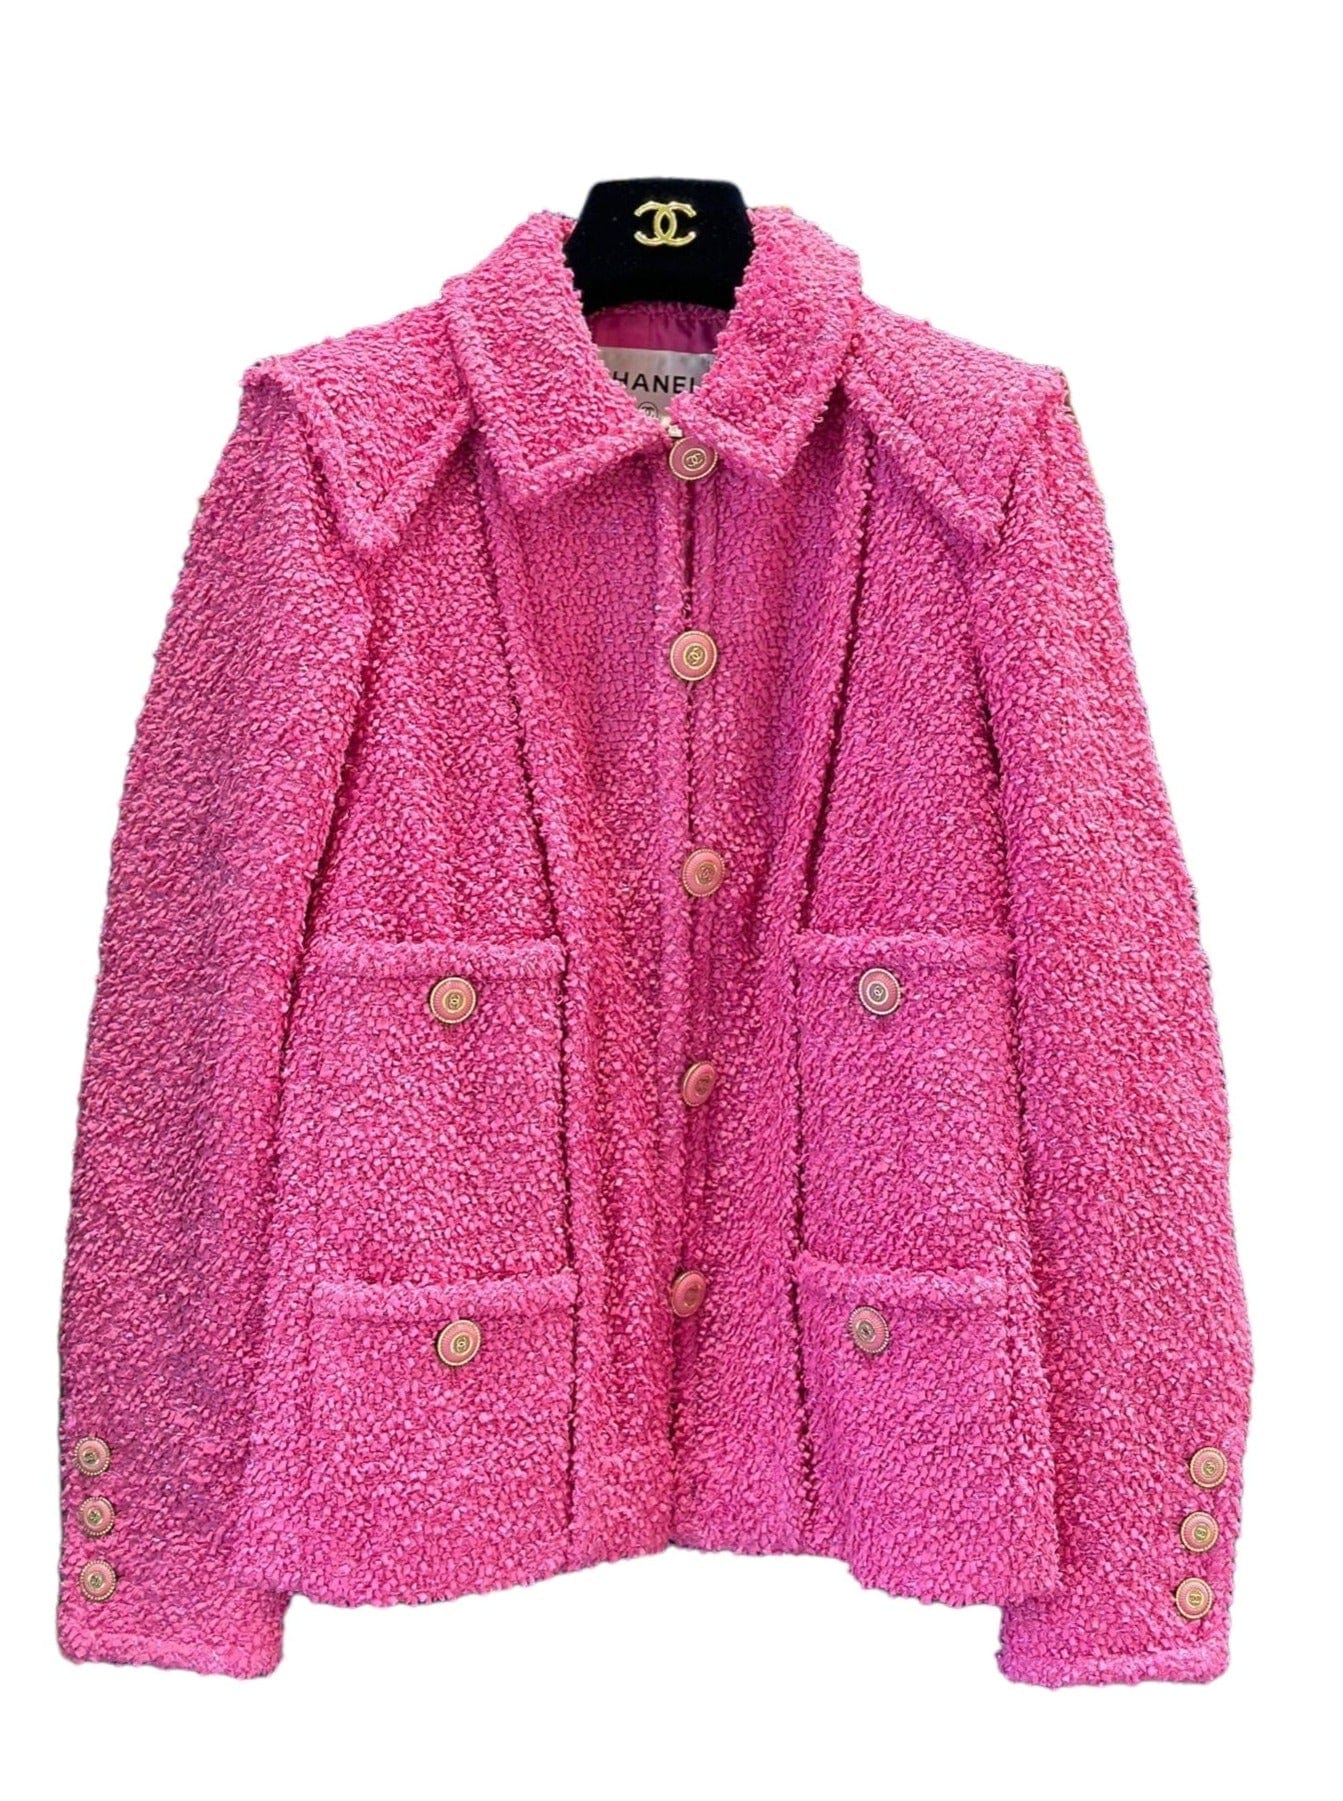 Luxury Promise Chanel - 20C Runway Pink Tweed Jacket Size 34